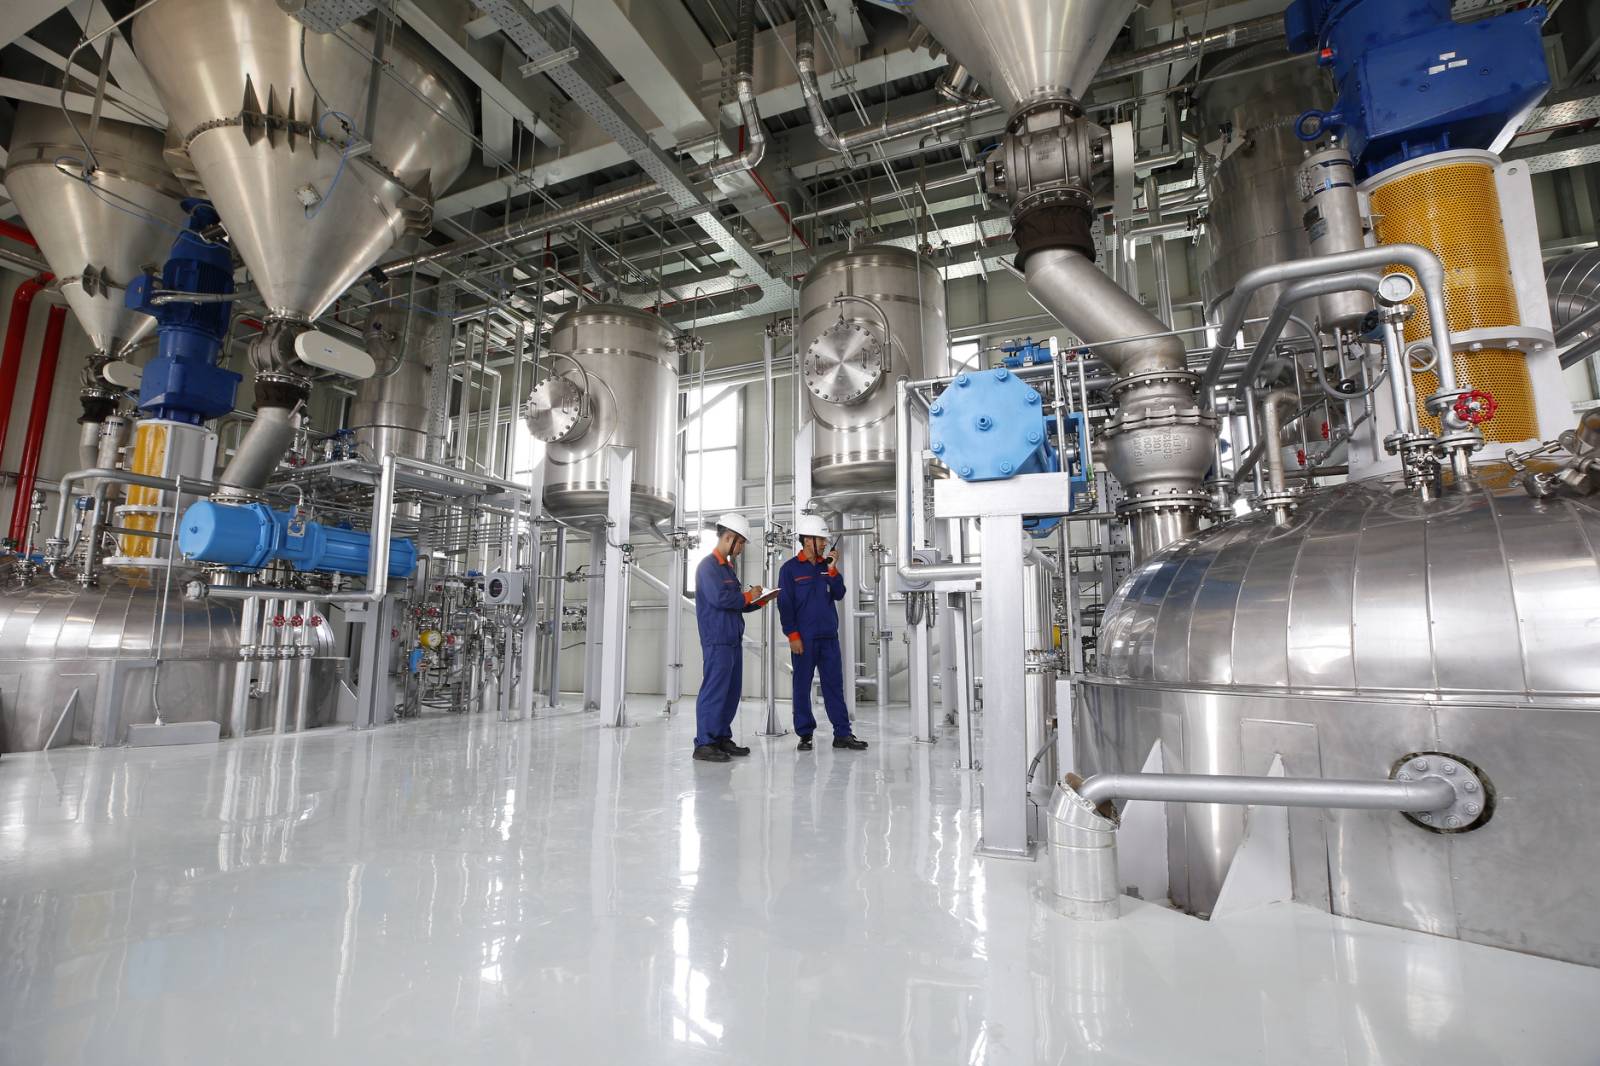 Nhà máy Hóa chất Phenikaa có tổng công suất giai đoạn I là 25.000 tấn/năm. Sau hơn ba năm vận hành, dây chuyền công nghệ sản xuất hoạt động ổn định và cung cấp đủ 100% khối lượng nhựa PEKN cho nhu cầu sản xuất của Tập đoàn.